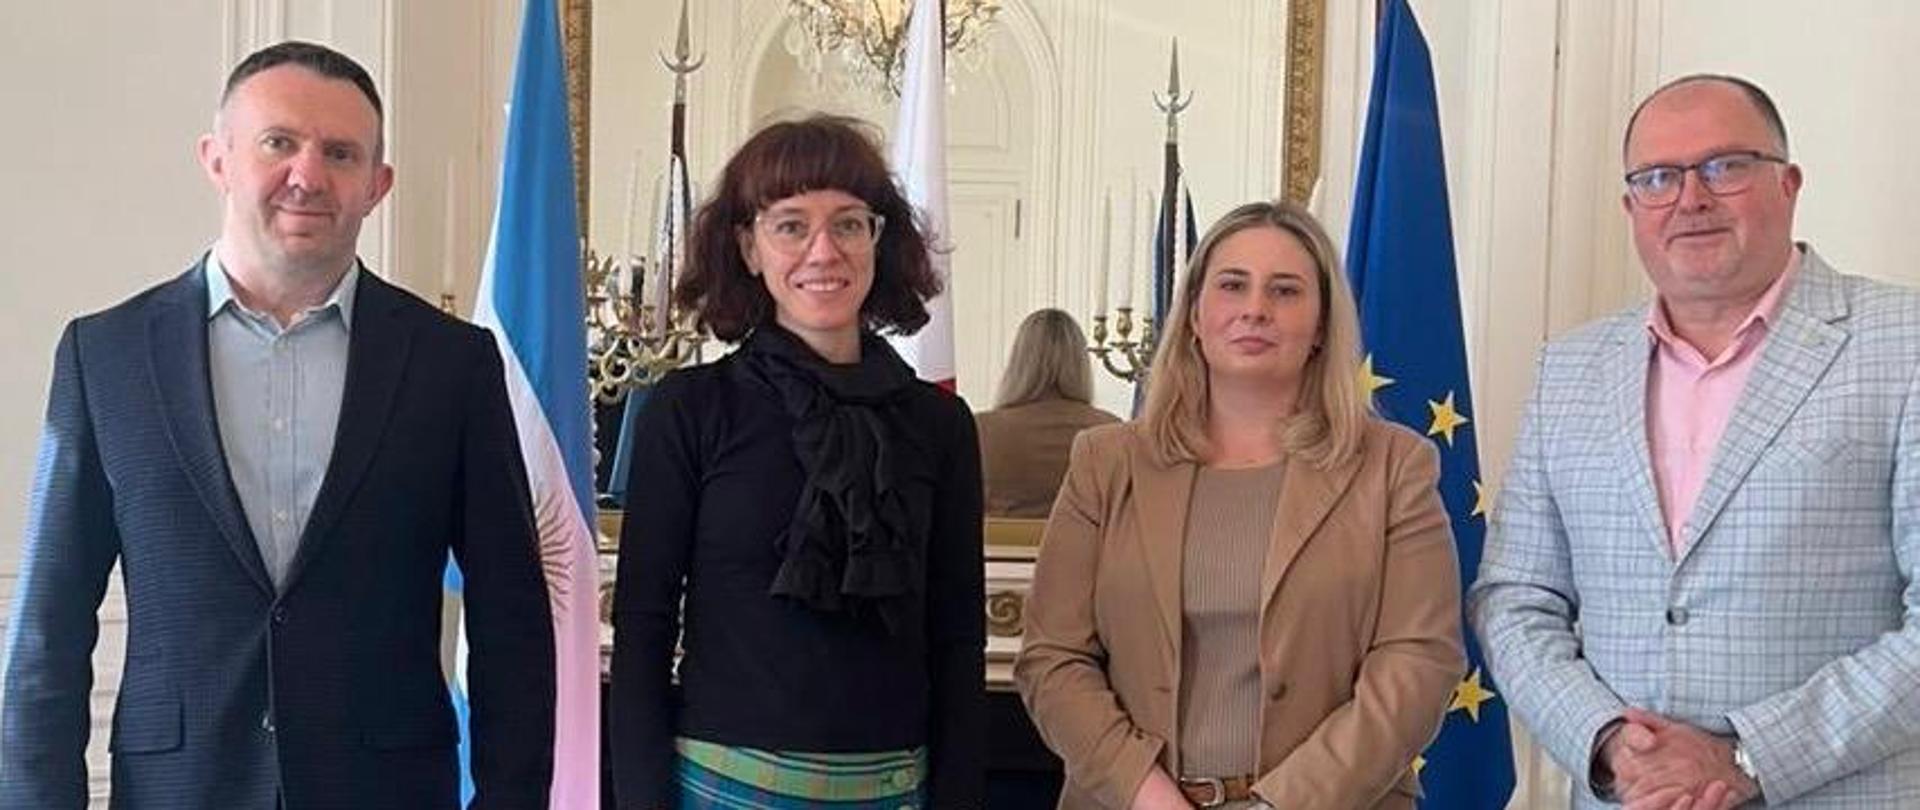 La Cónsul Monika Perendyk mantuvo una reunión con los representantes de las universidades: polaca - Katolicki Uniwersytet Lubelski Jana Pawła II y argentina - Universidad Nacional de Quilmes. 